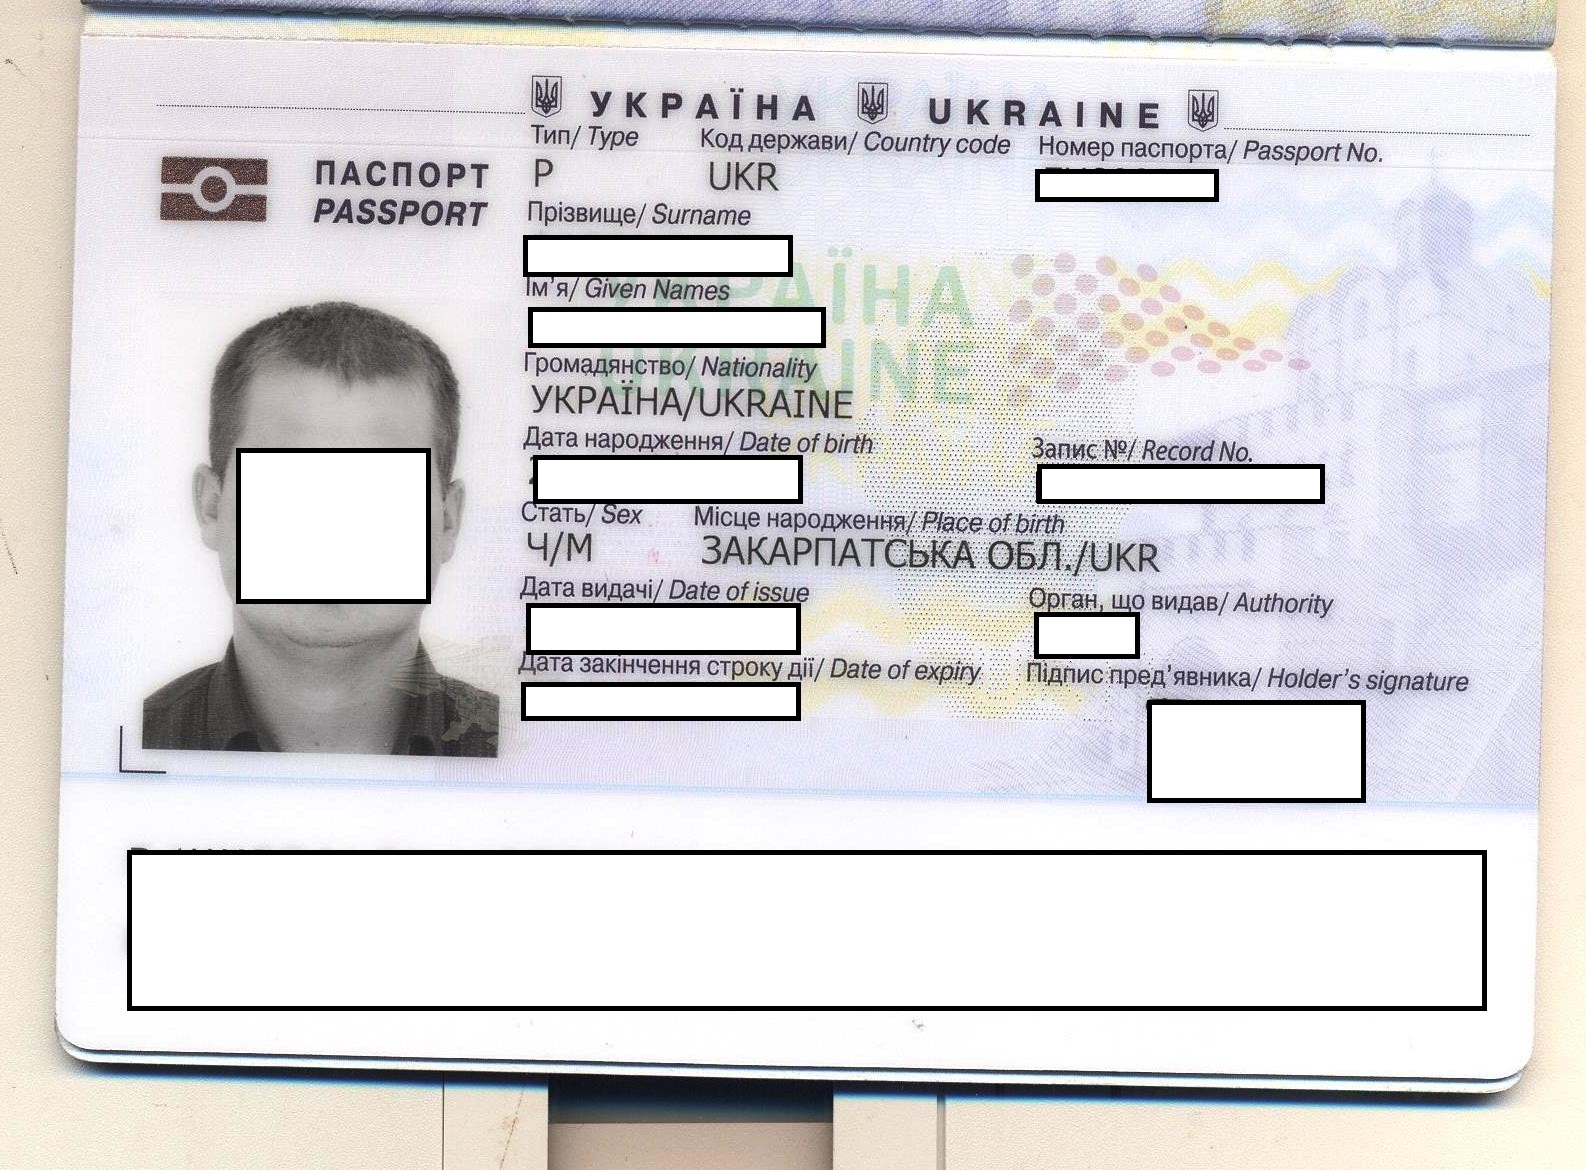 27-річний закарпатець, повертаючись додому з Угорщини через пункт пропуску «Тиса», подав на контроль закордонний паспорт, який, як виявили прикордонники, йому не належав.